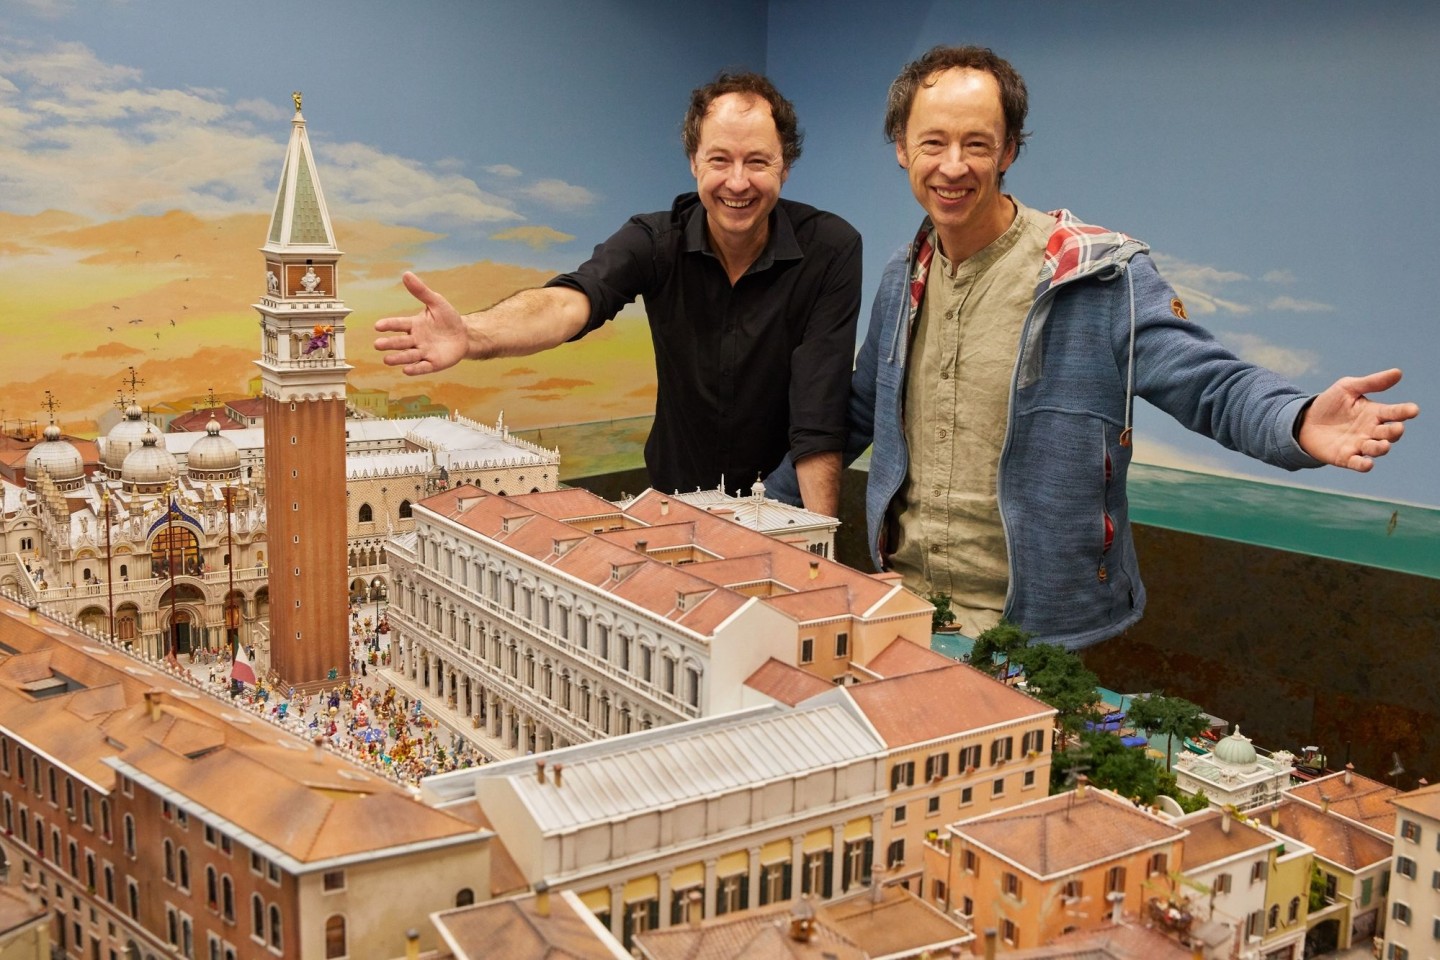 Die Unternehmer Frederik (l) und Gerrit Braun stehen während einer Pressekonferenz im Hamburger Miniatur Wunderland neben dem neuen Venedig-Abschnitt.